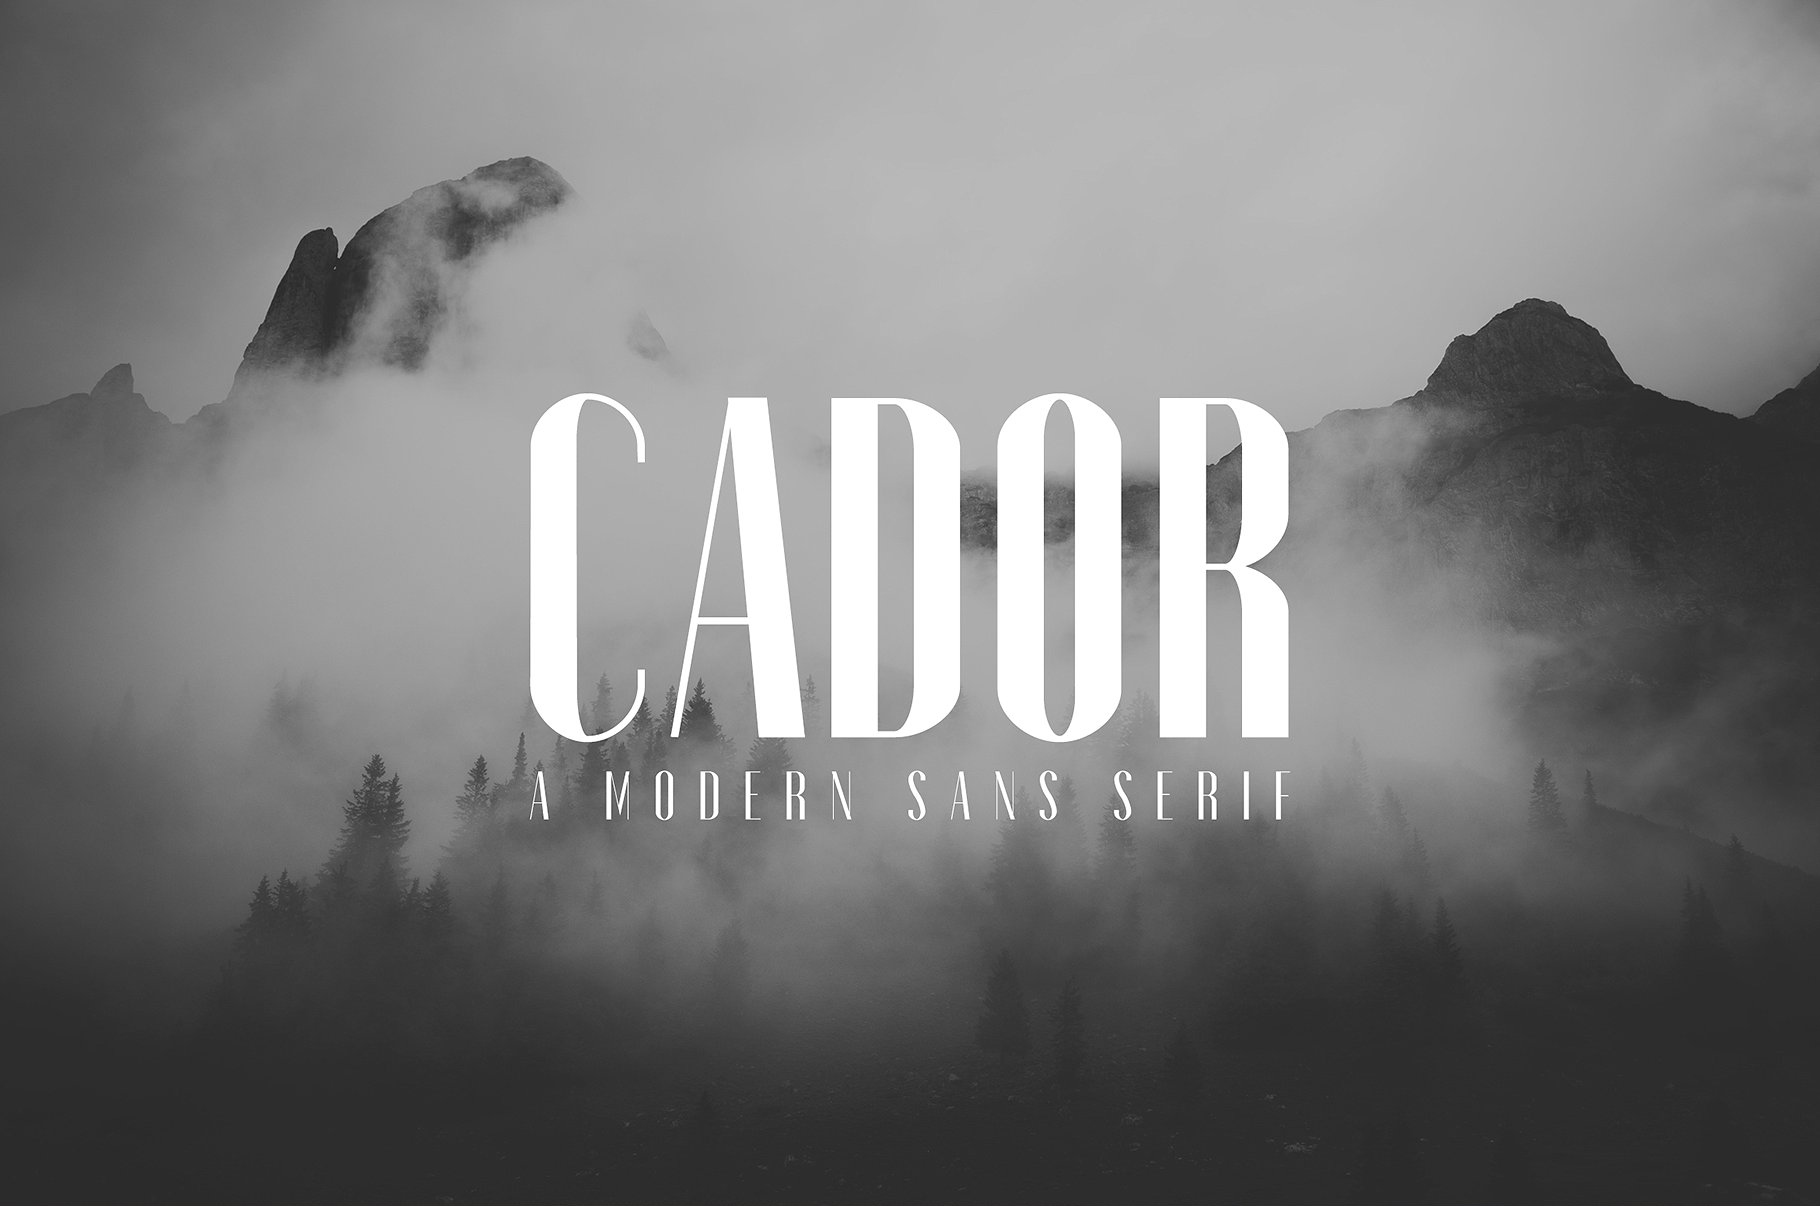 优雅创造性的圆滑线条无衬线字体 Cador Sans Serif Font Family Pack插图